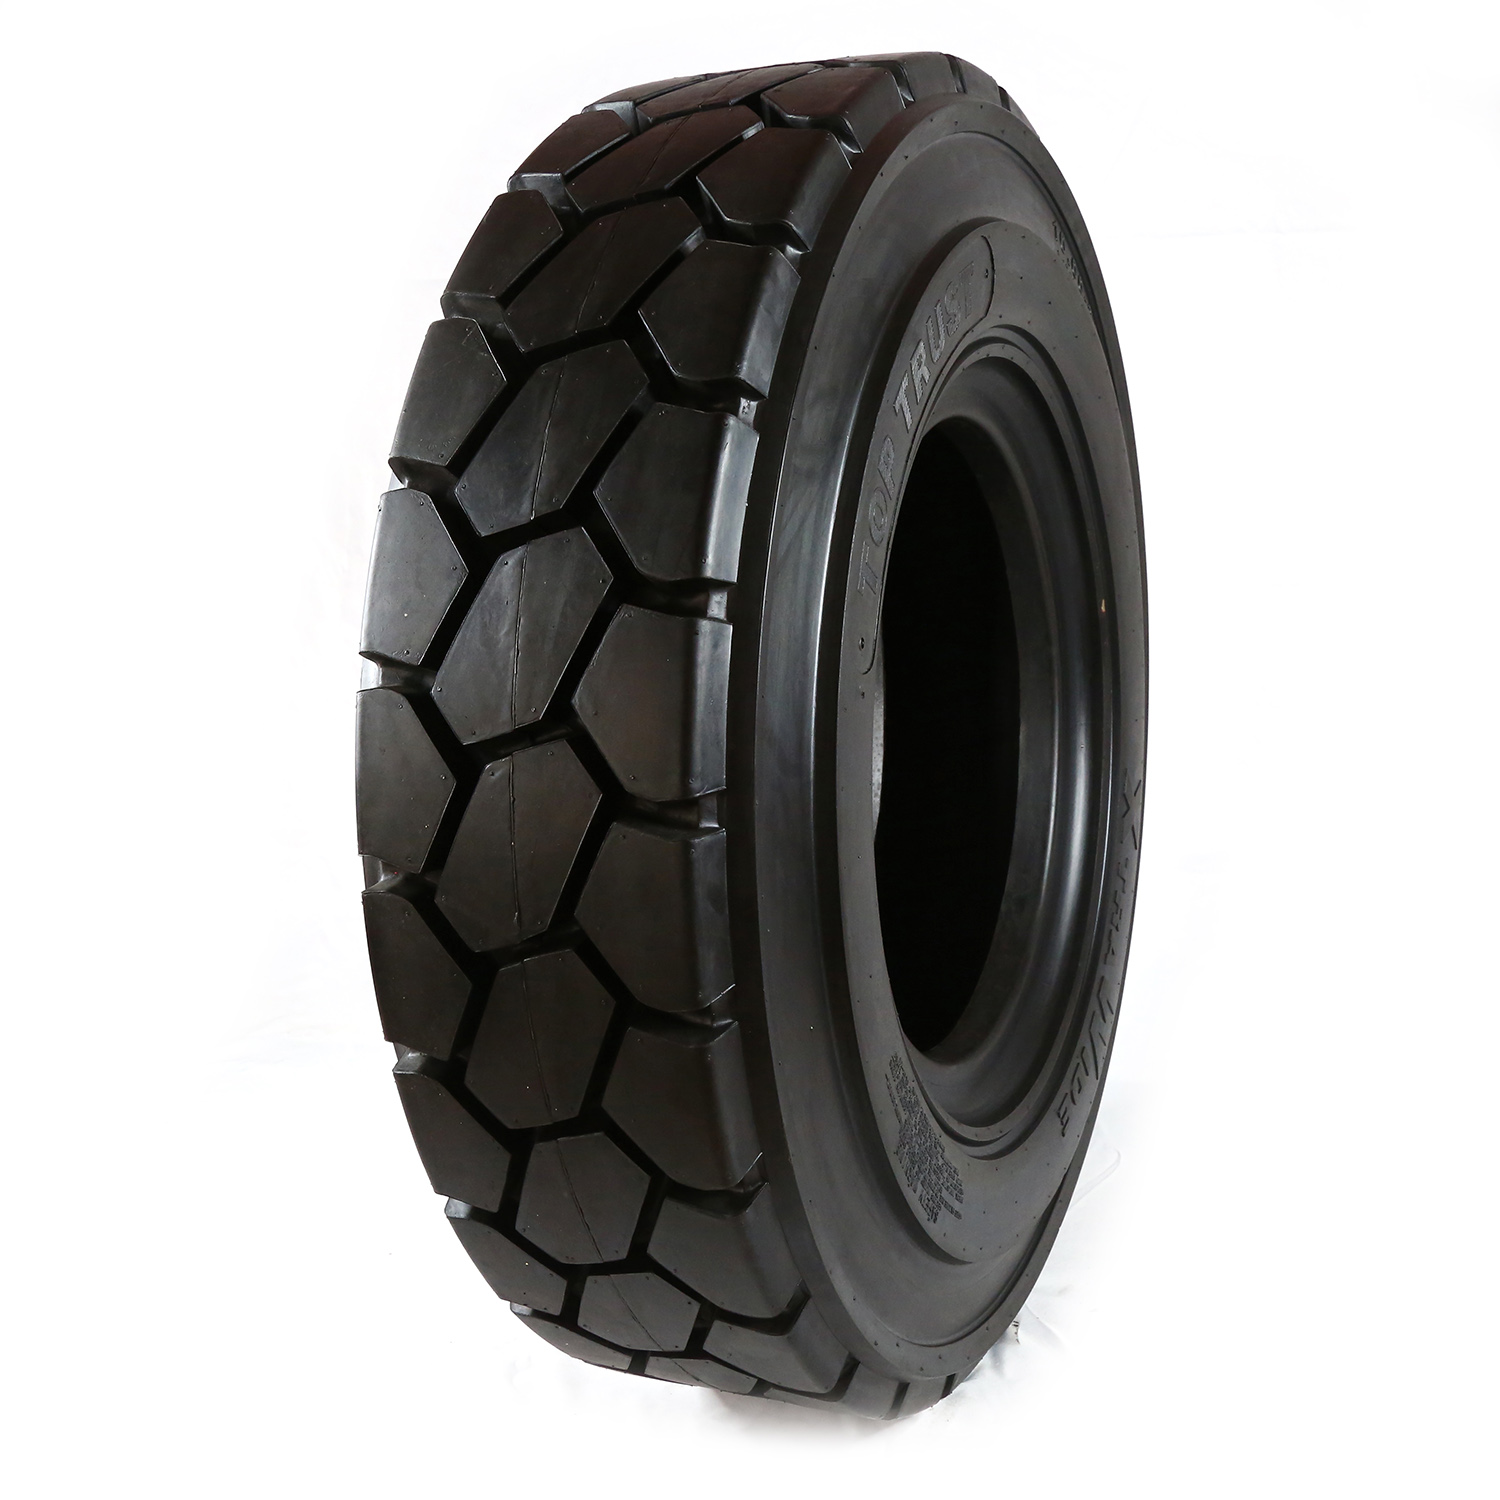 Fabriksförsäljning Gaffeltruckar Skrapare Däck 10-20 12-20 med SH-288-mönster industriellt pneumatiskt däck